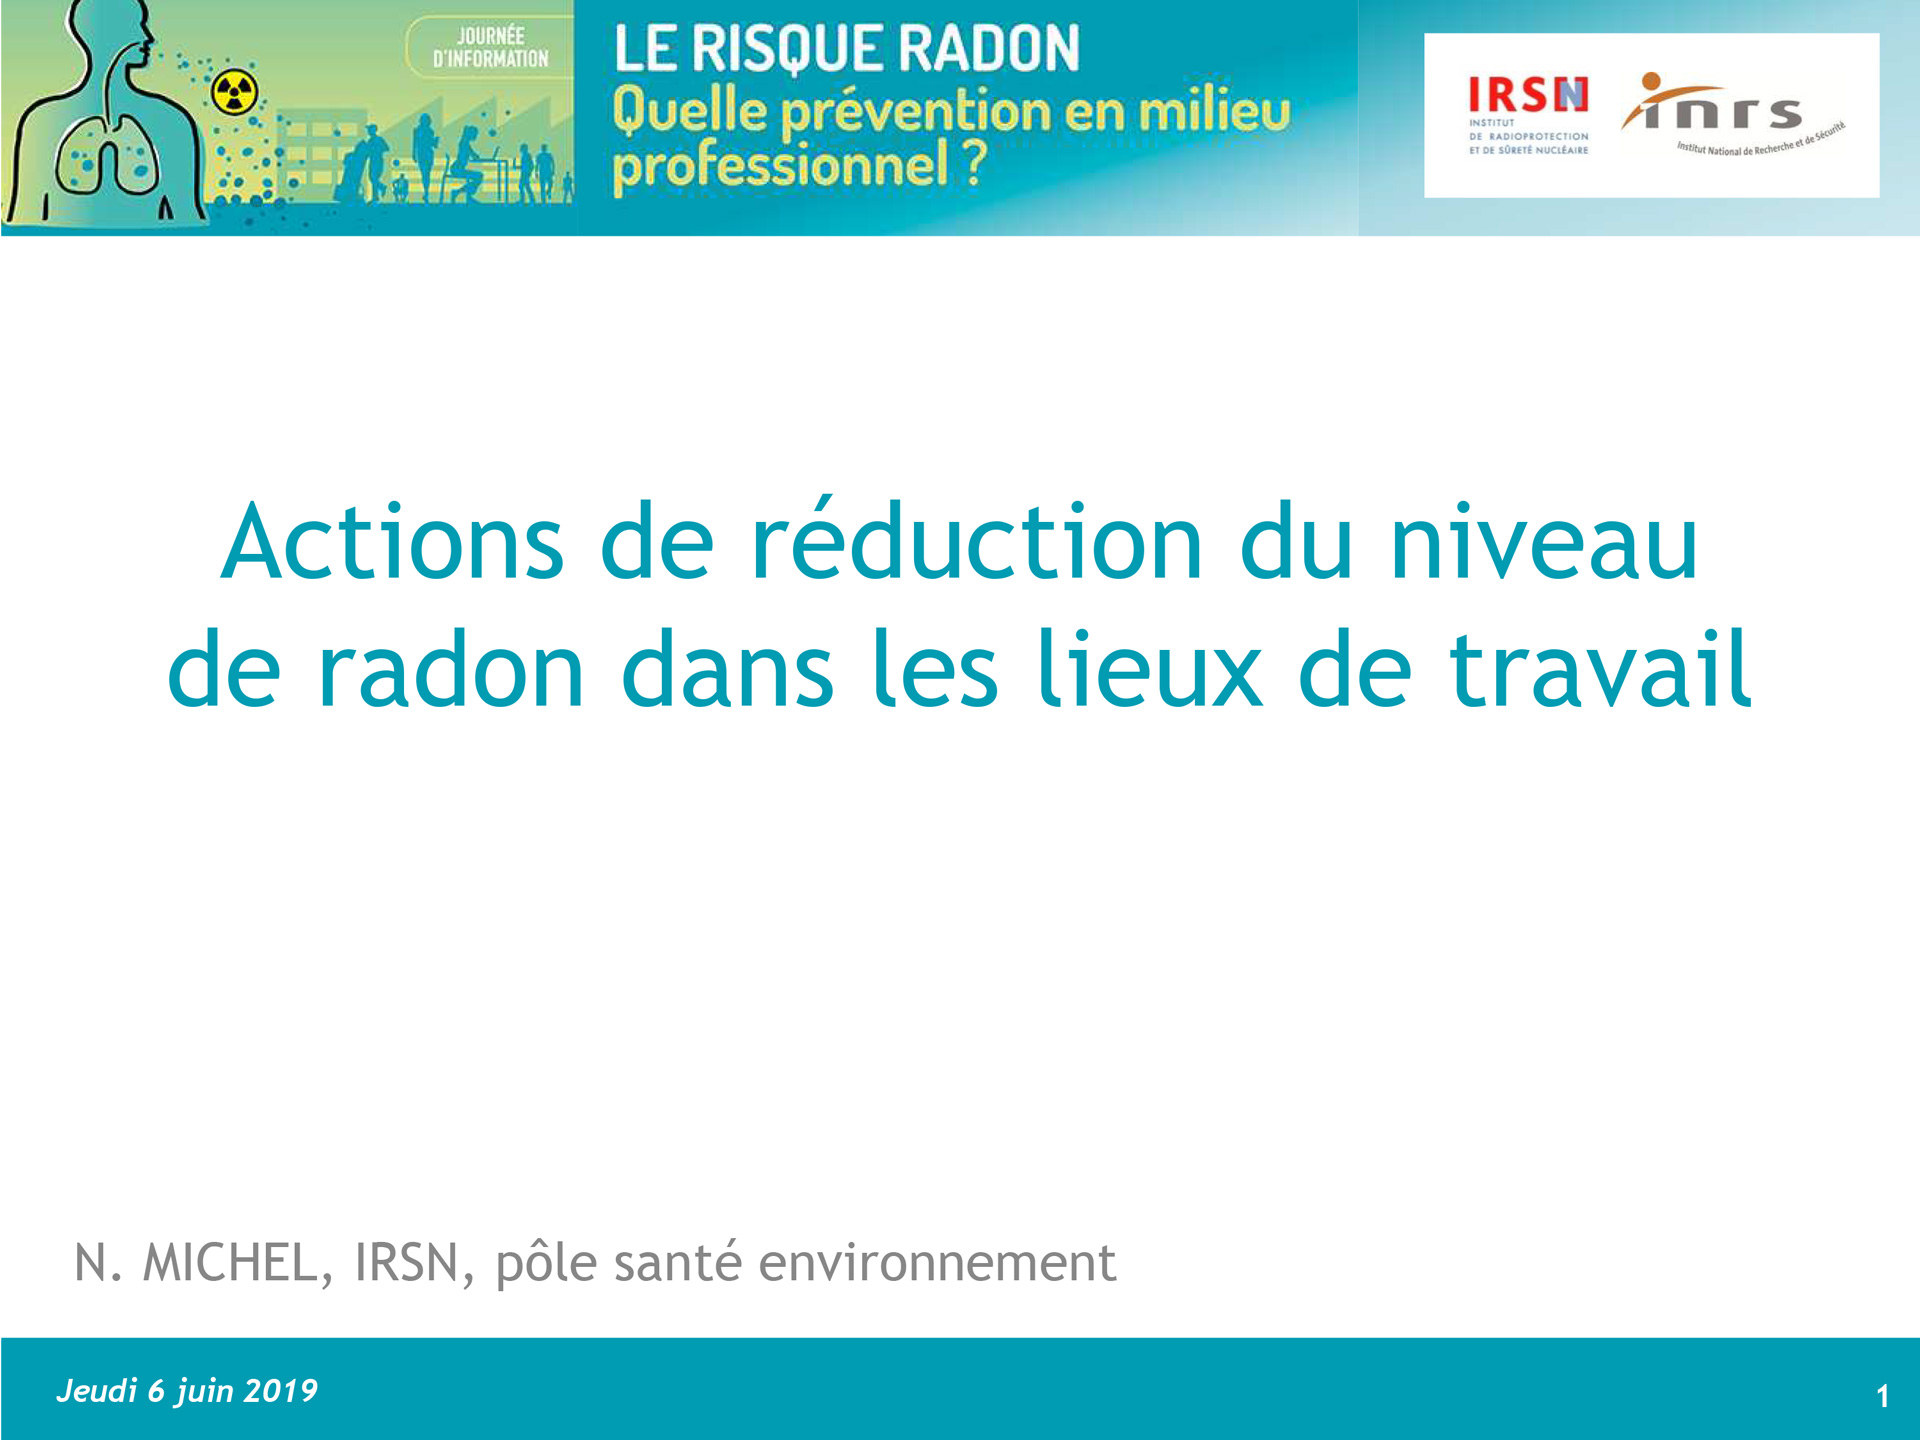 Moyens de réduction du radon par Nicolas MICHEL, IRSN